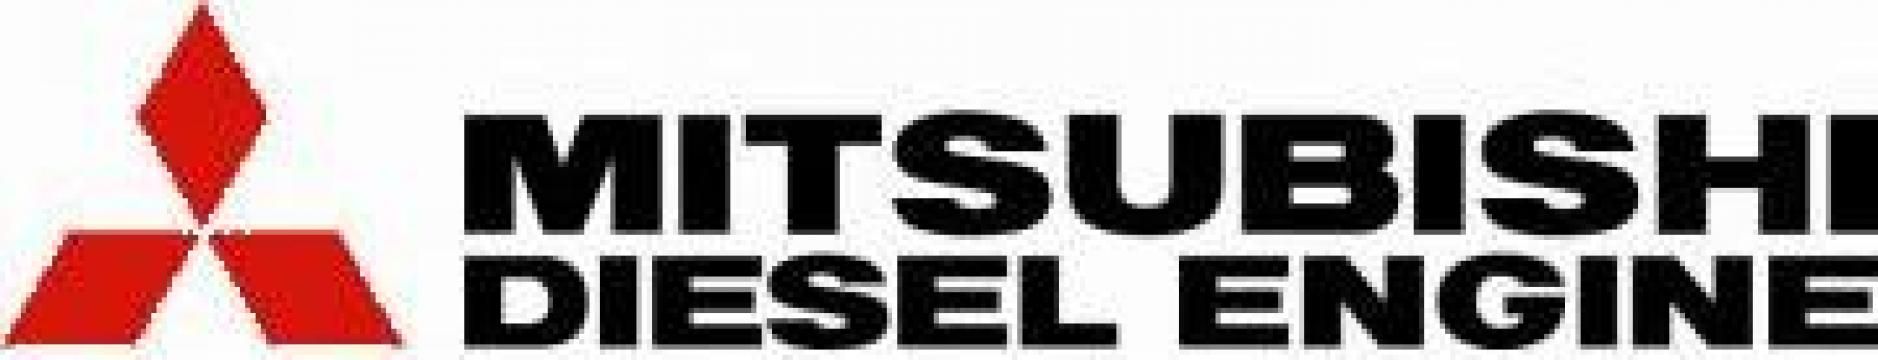 Piese de schimb motoare diesel Mitsubishi de la Top Diesel SRL